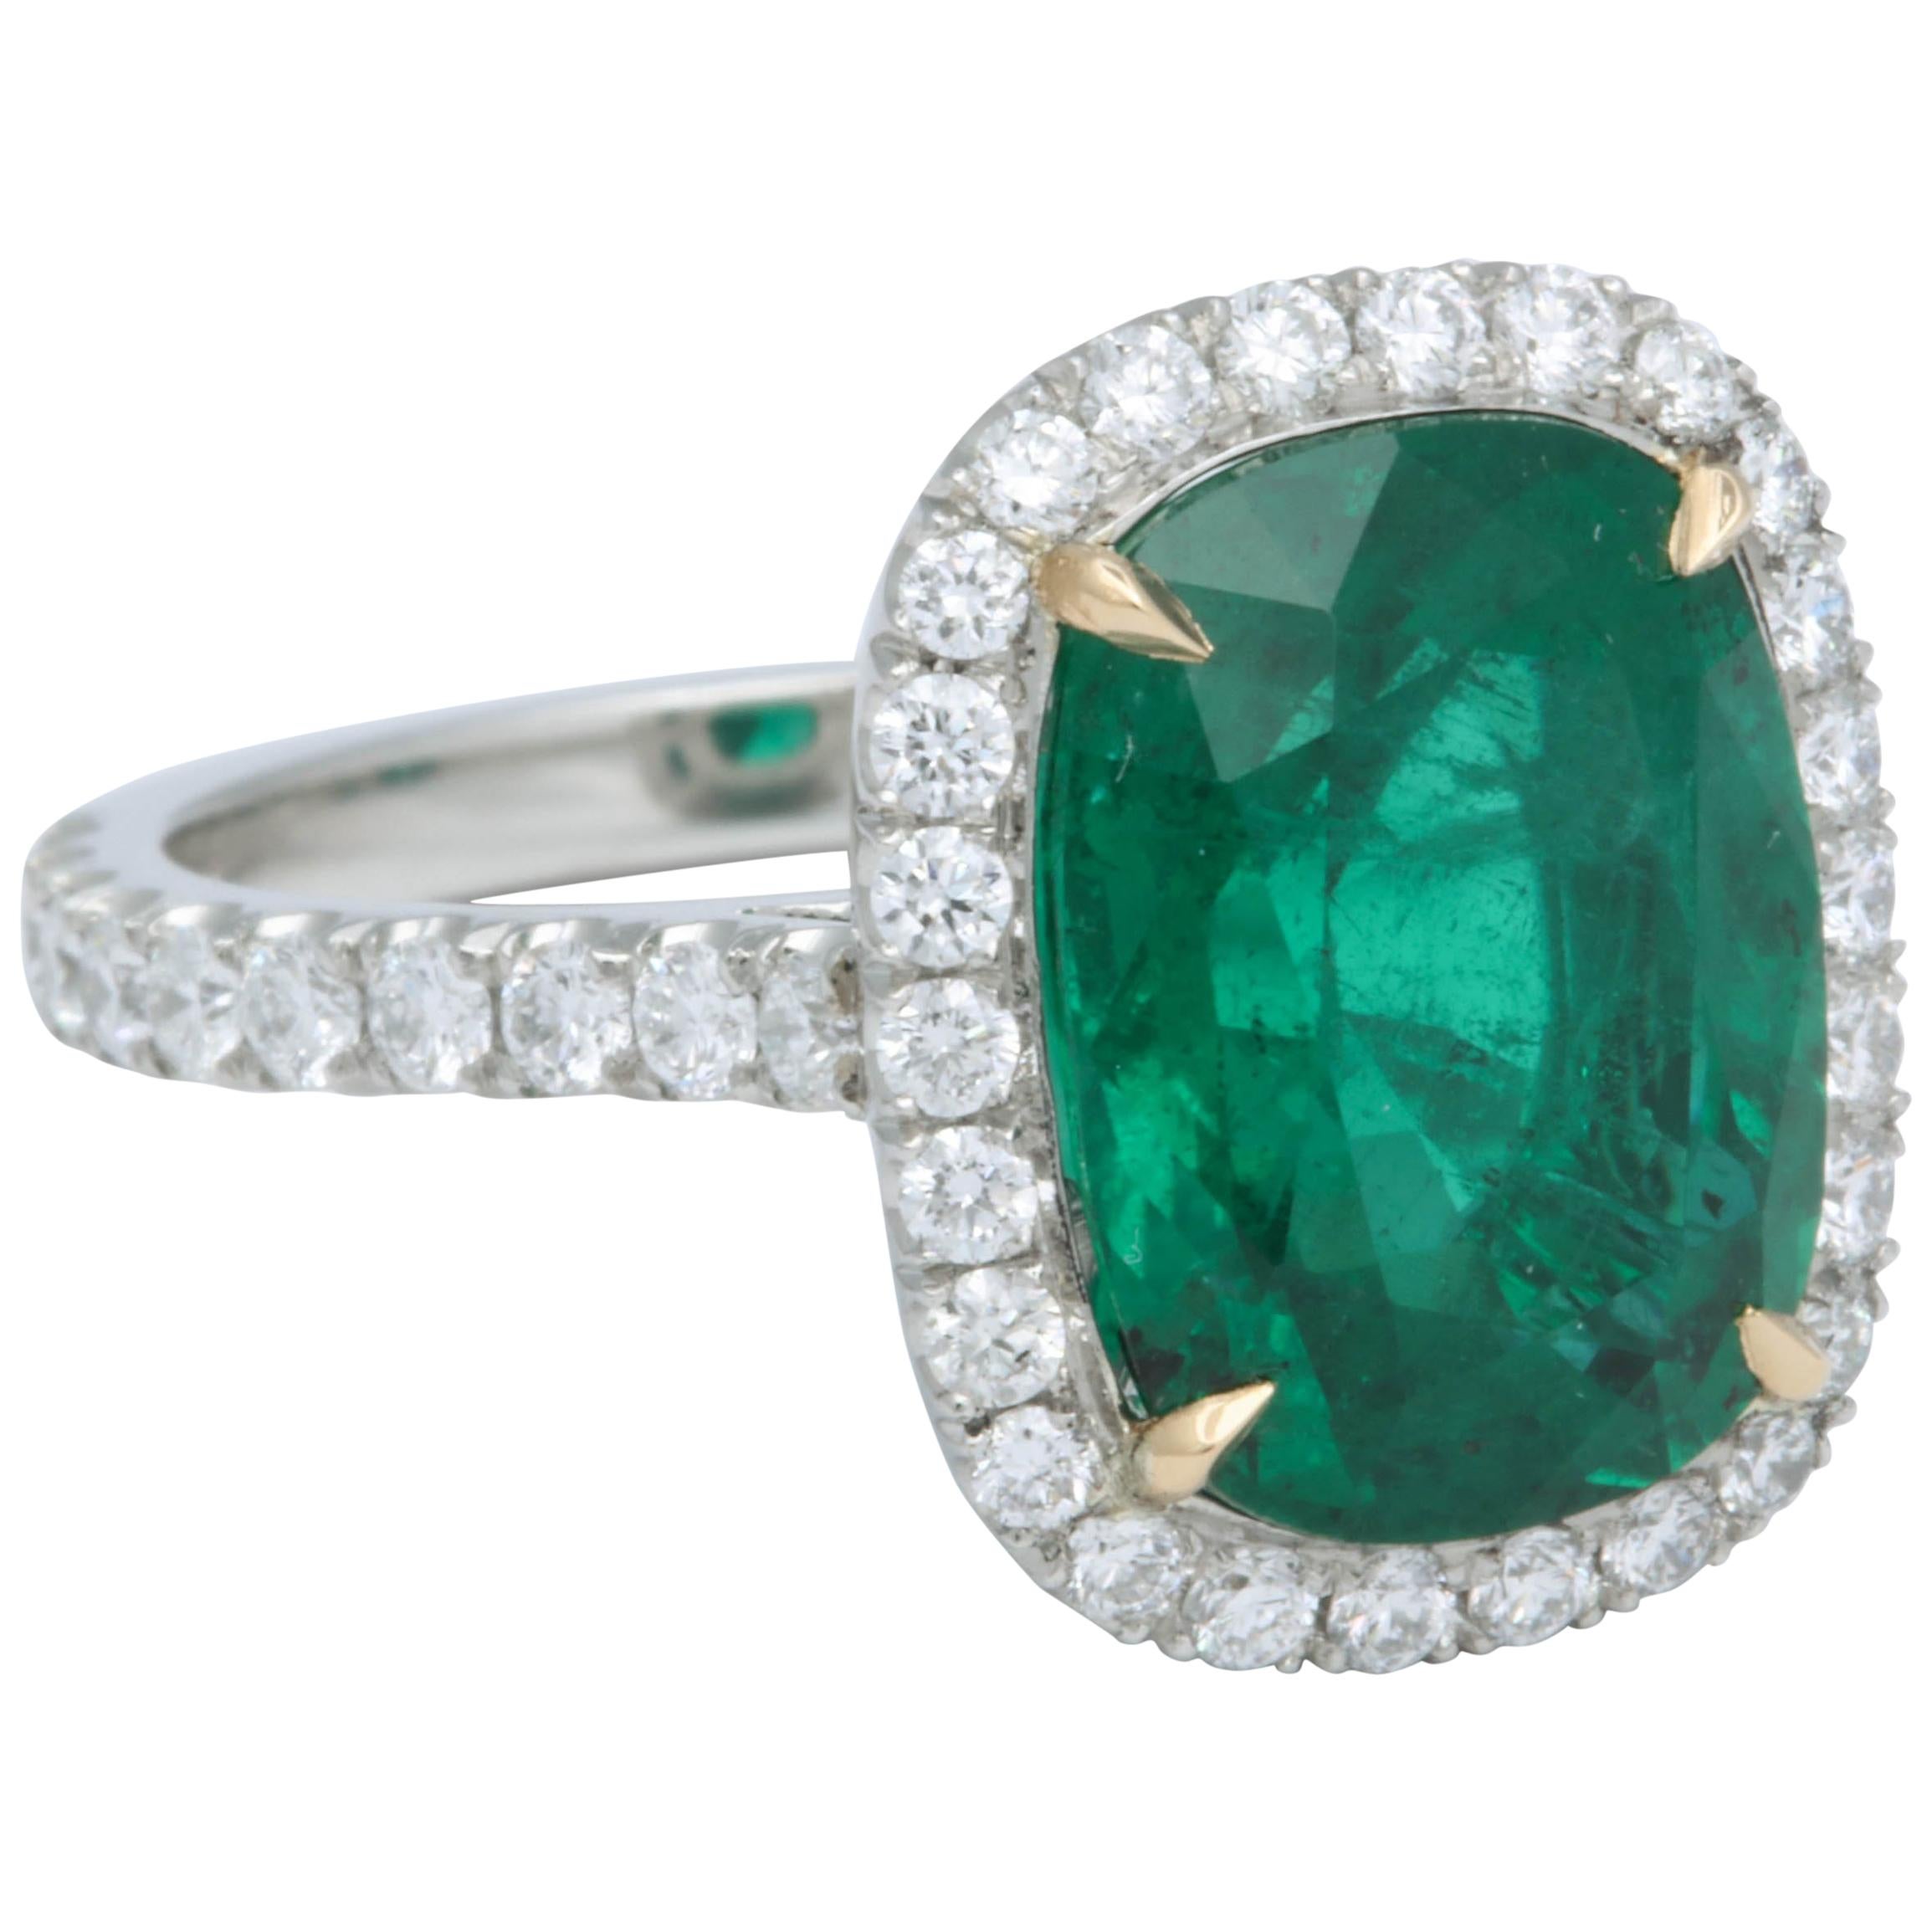 Bague halo de diamants verts taille coussin et émeraude de 5 carats certifiée GIA, sans huile